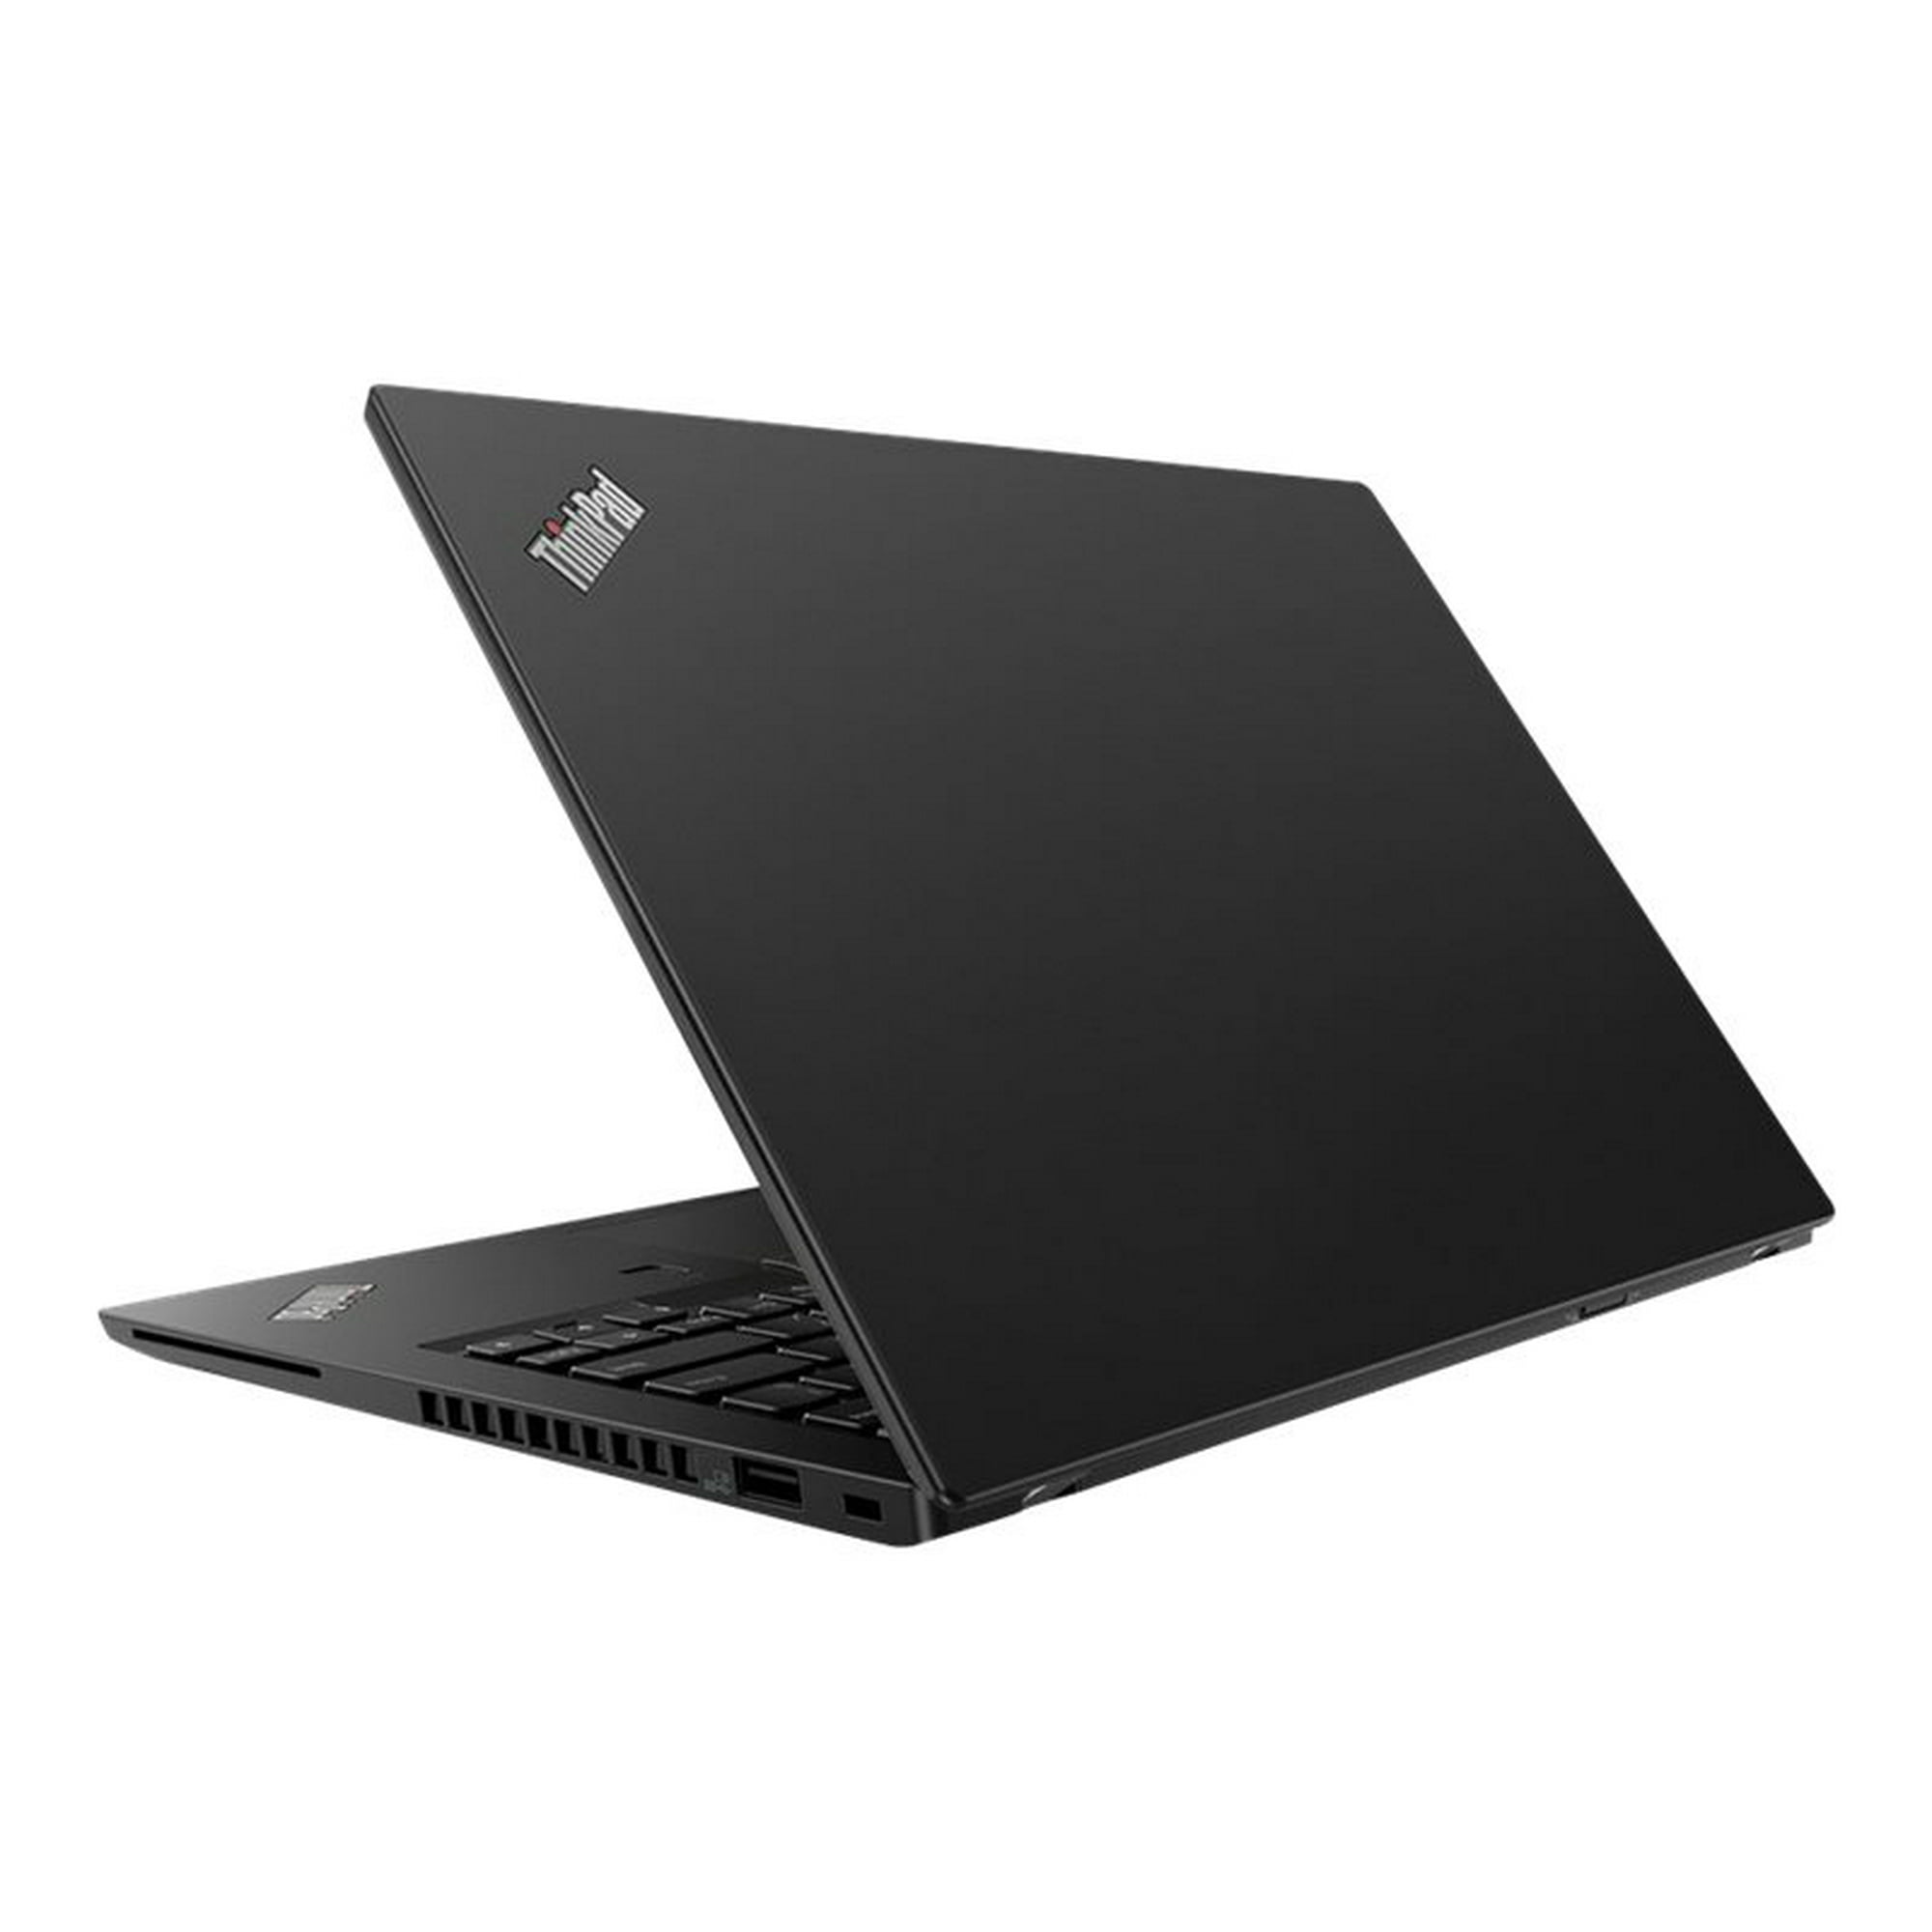 Lenovo ThinkPad A285 20MW - AMD Ryzen 5 Pro 2500U / 2 GHz - Win 10 